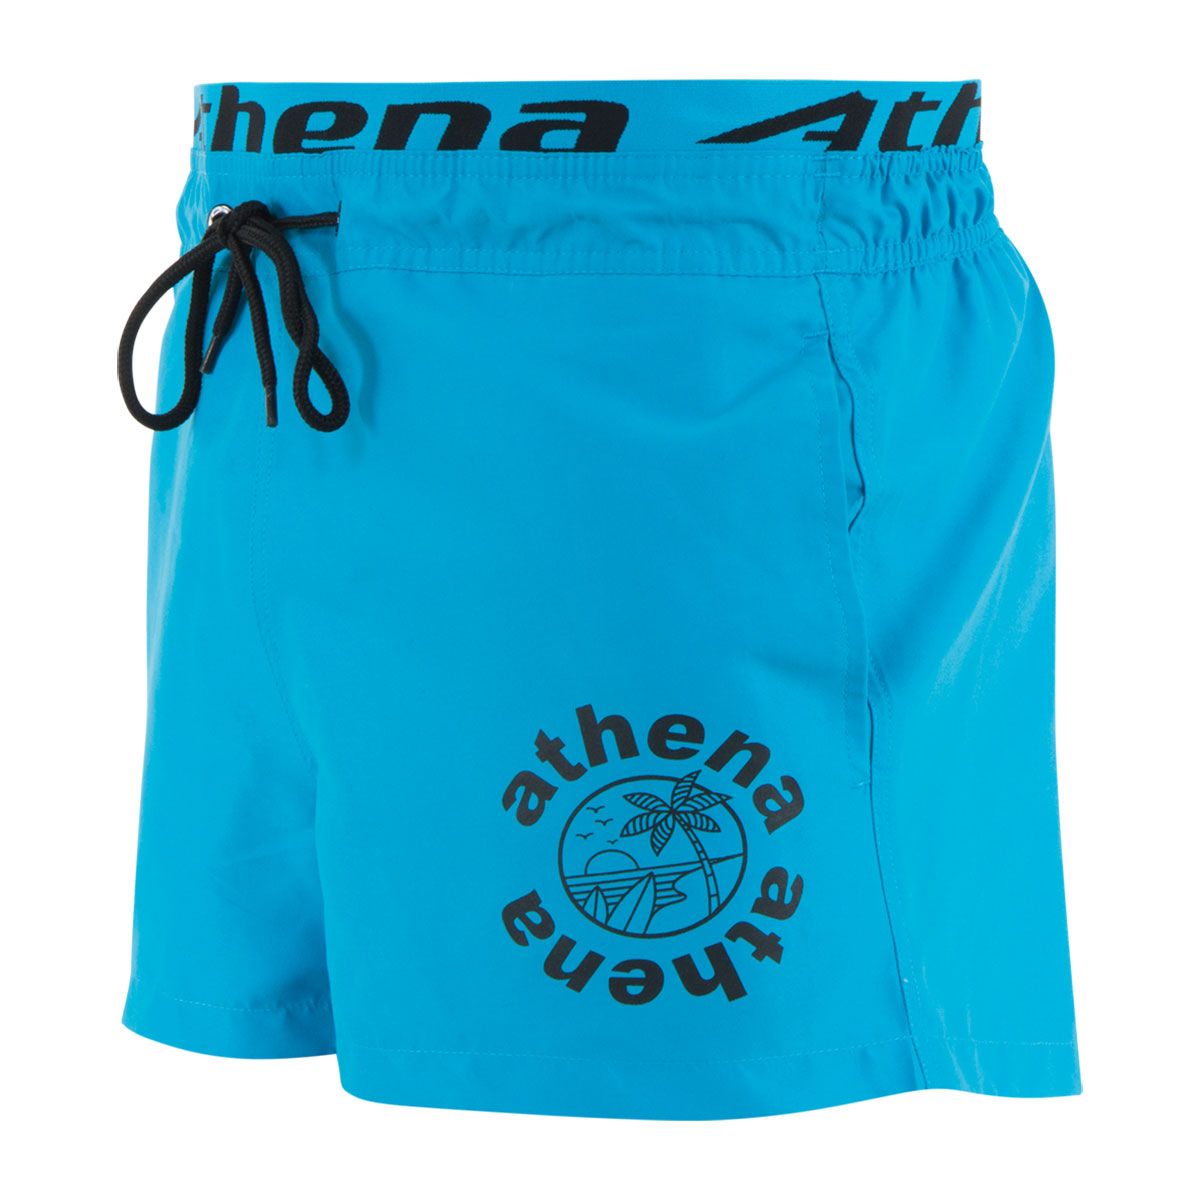 Visiter la boutique AthenaAthena Summer Vibes 5J51 Short de Bain Homme Requin 